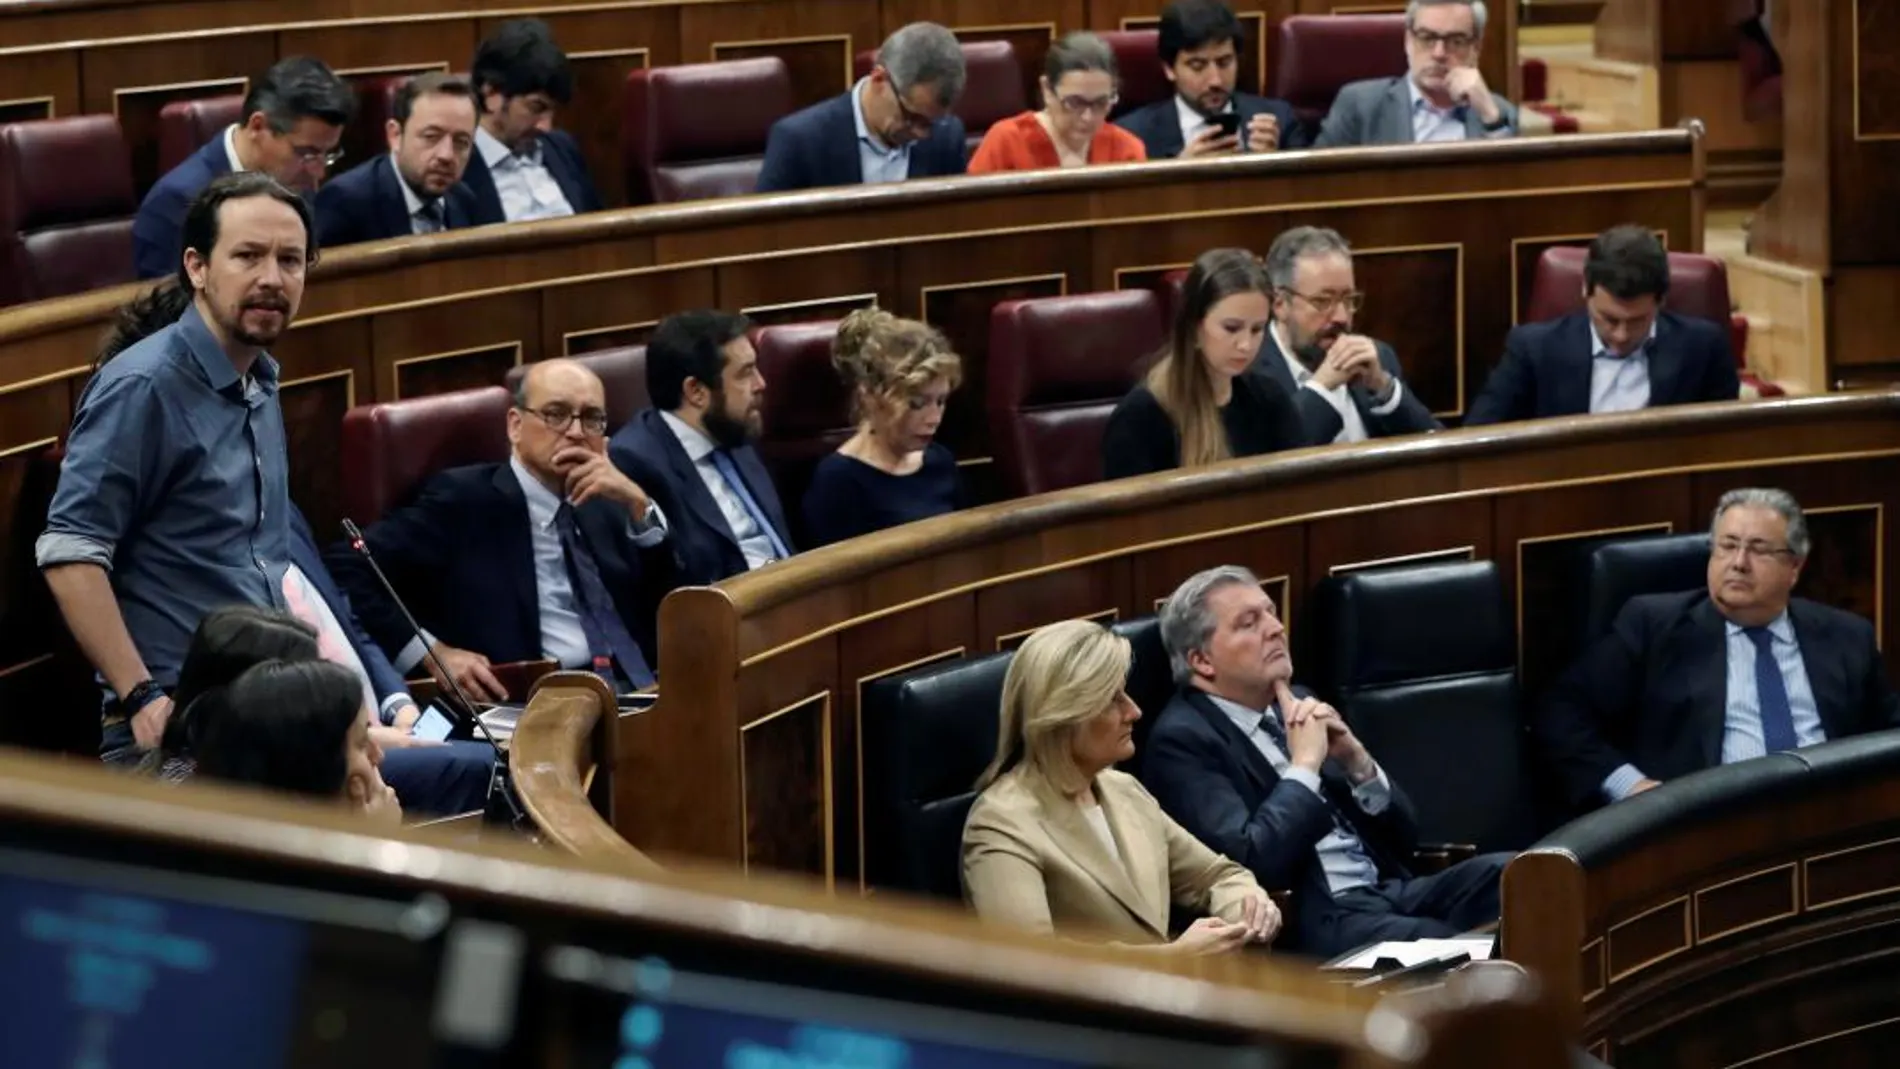 El líder de Podemos, Pablo Iglesias, interviene durante la sesión de control al Gobierno hoy en el Congreso de los Diputados. EFE/Ballesteros